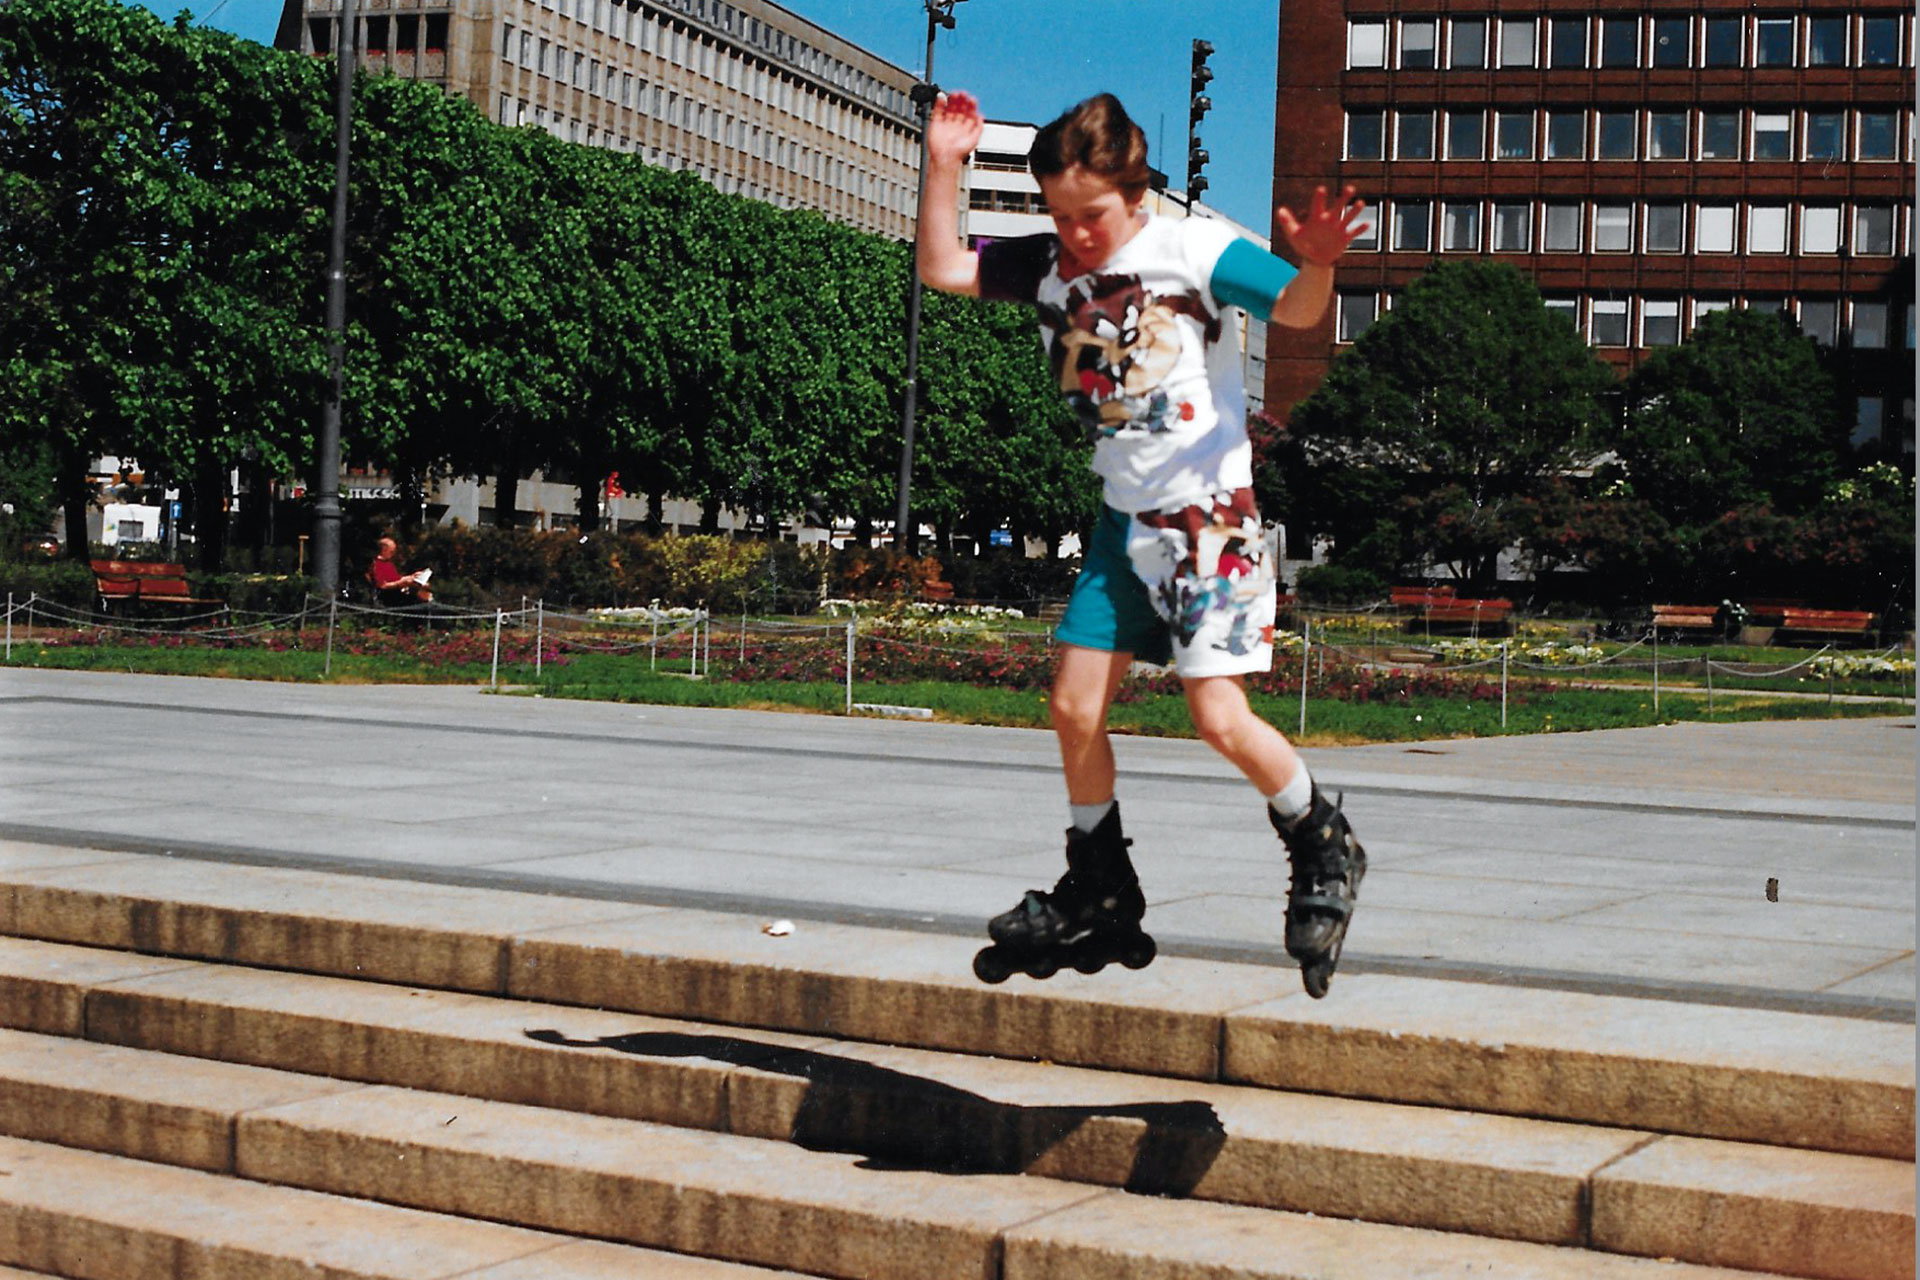 Richard var en aktiv gutt. Her står han på rulleskøyter nede ved Aker Brygge i Oslo. Foto: Privat